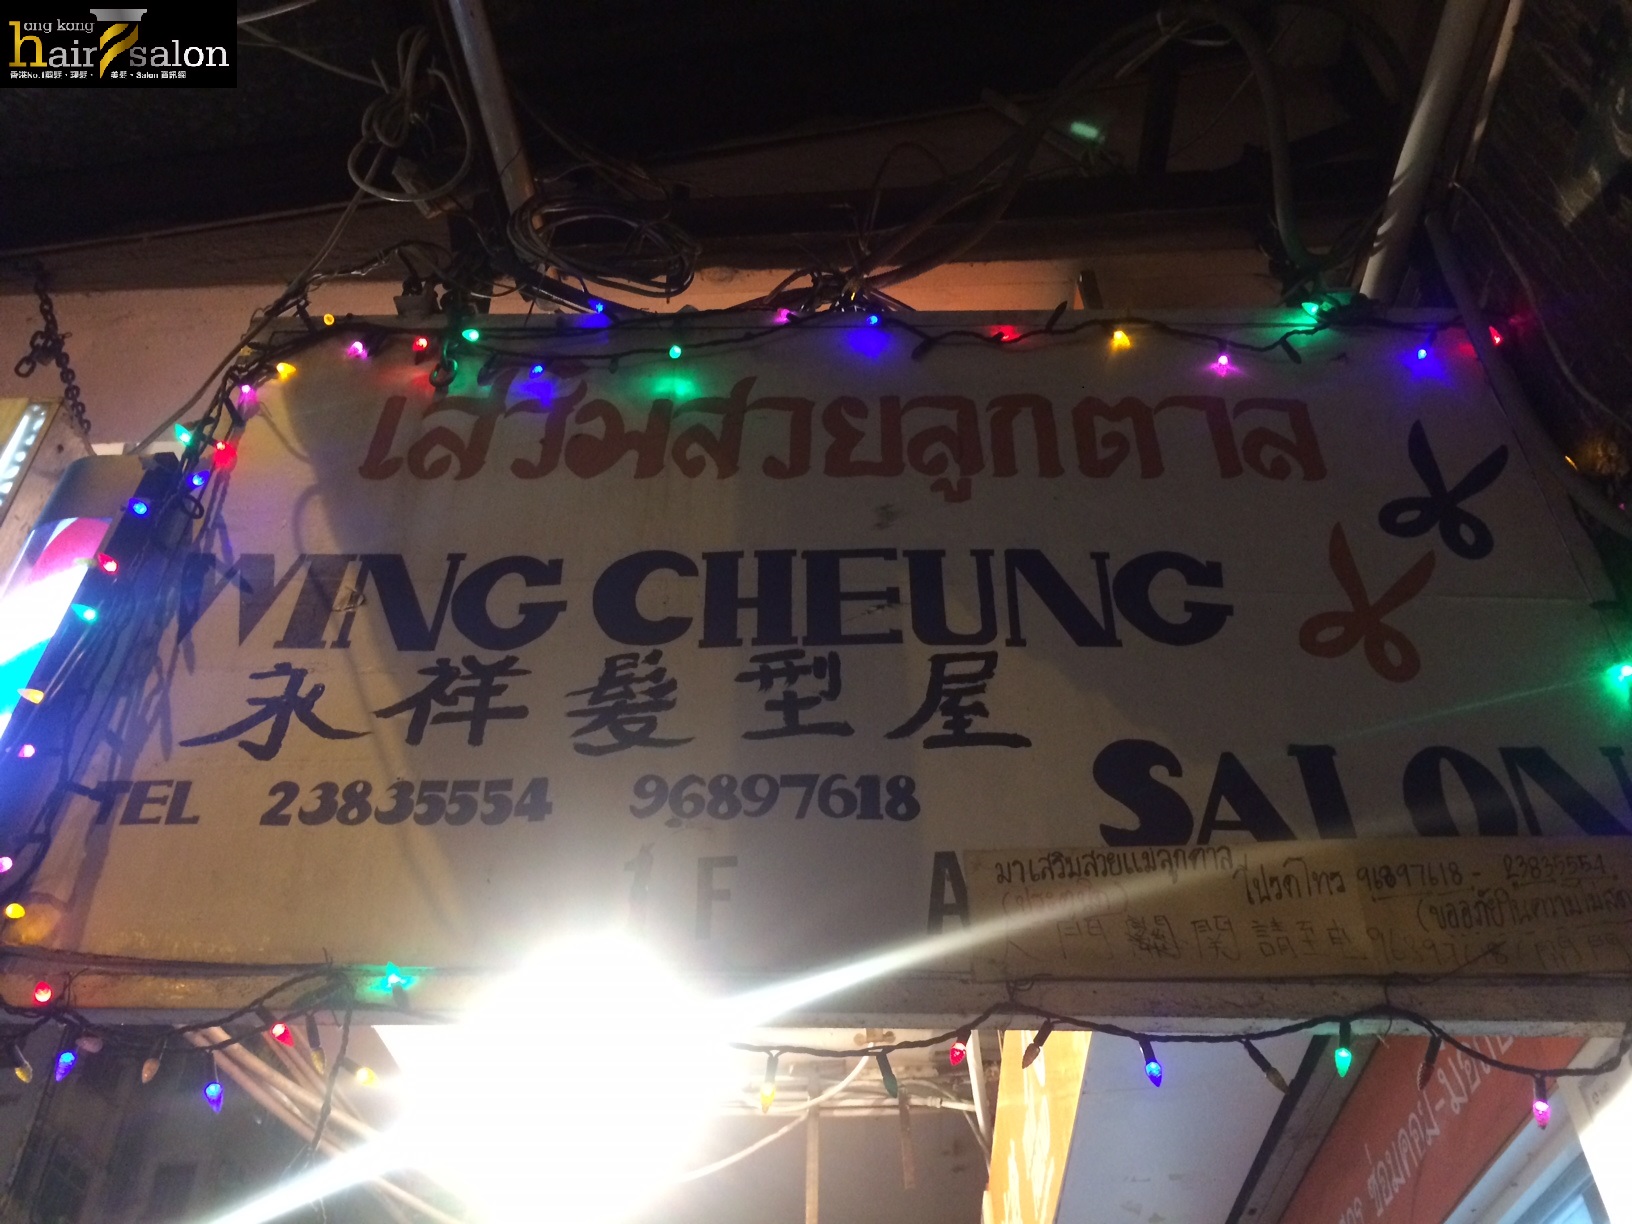 髮型屋 Salon: Wing Cheung Salon 永祥髮型屋 